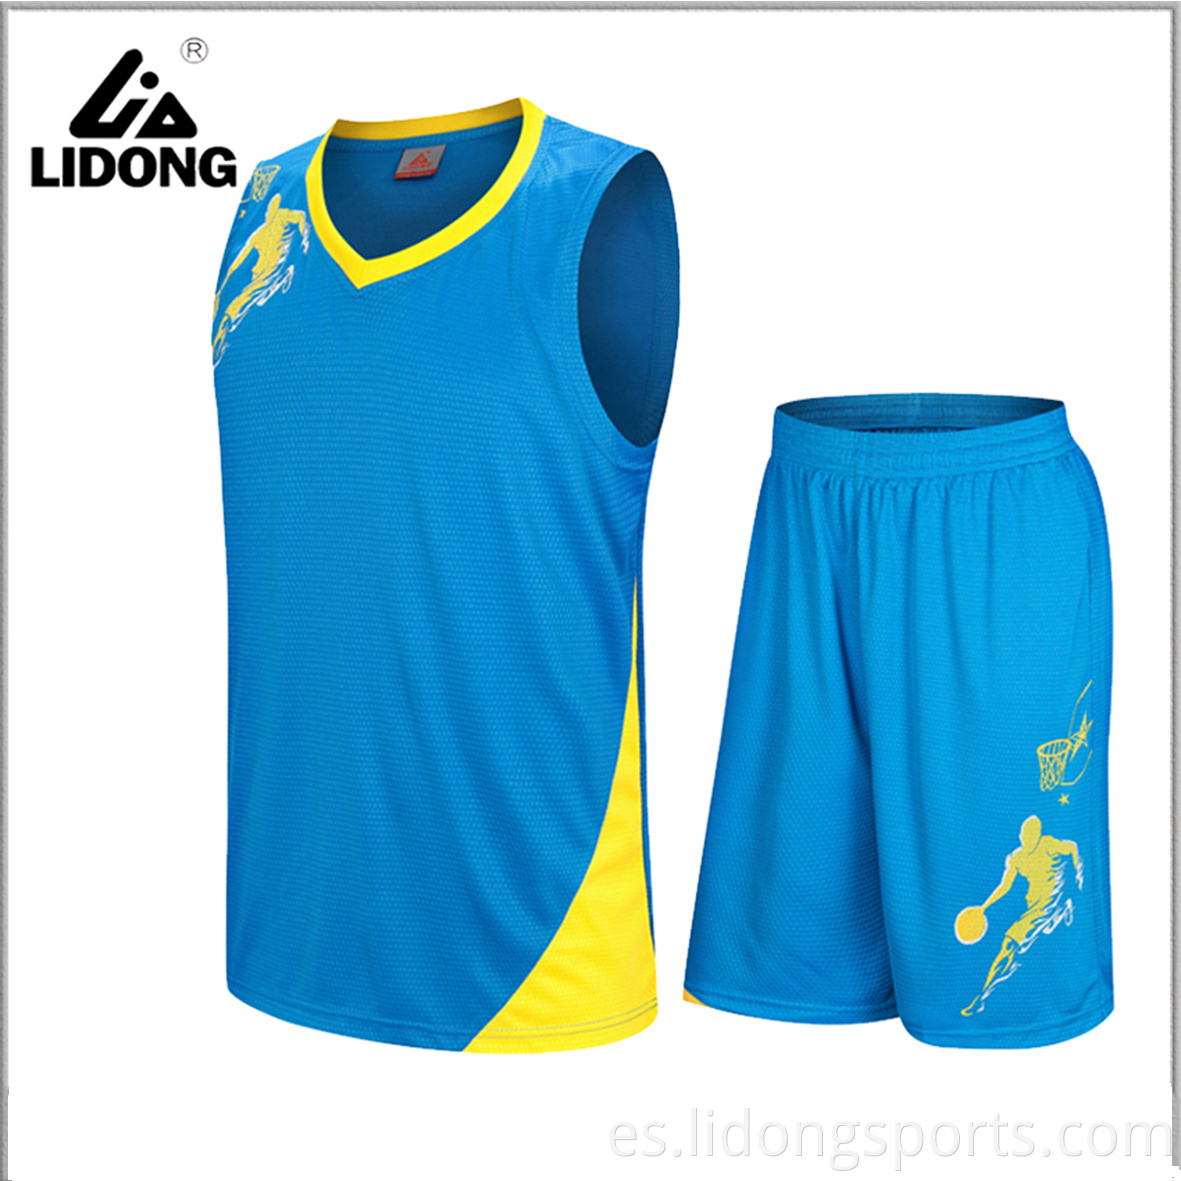 Nuevo unisex personalizados para niños y uniformes de baloncesto para adultos